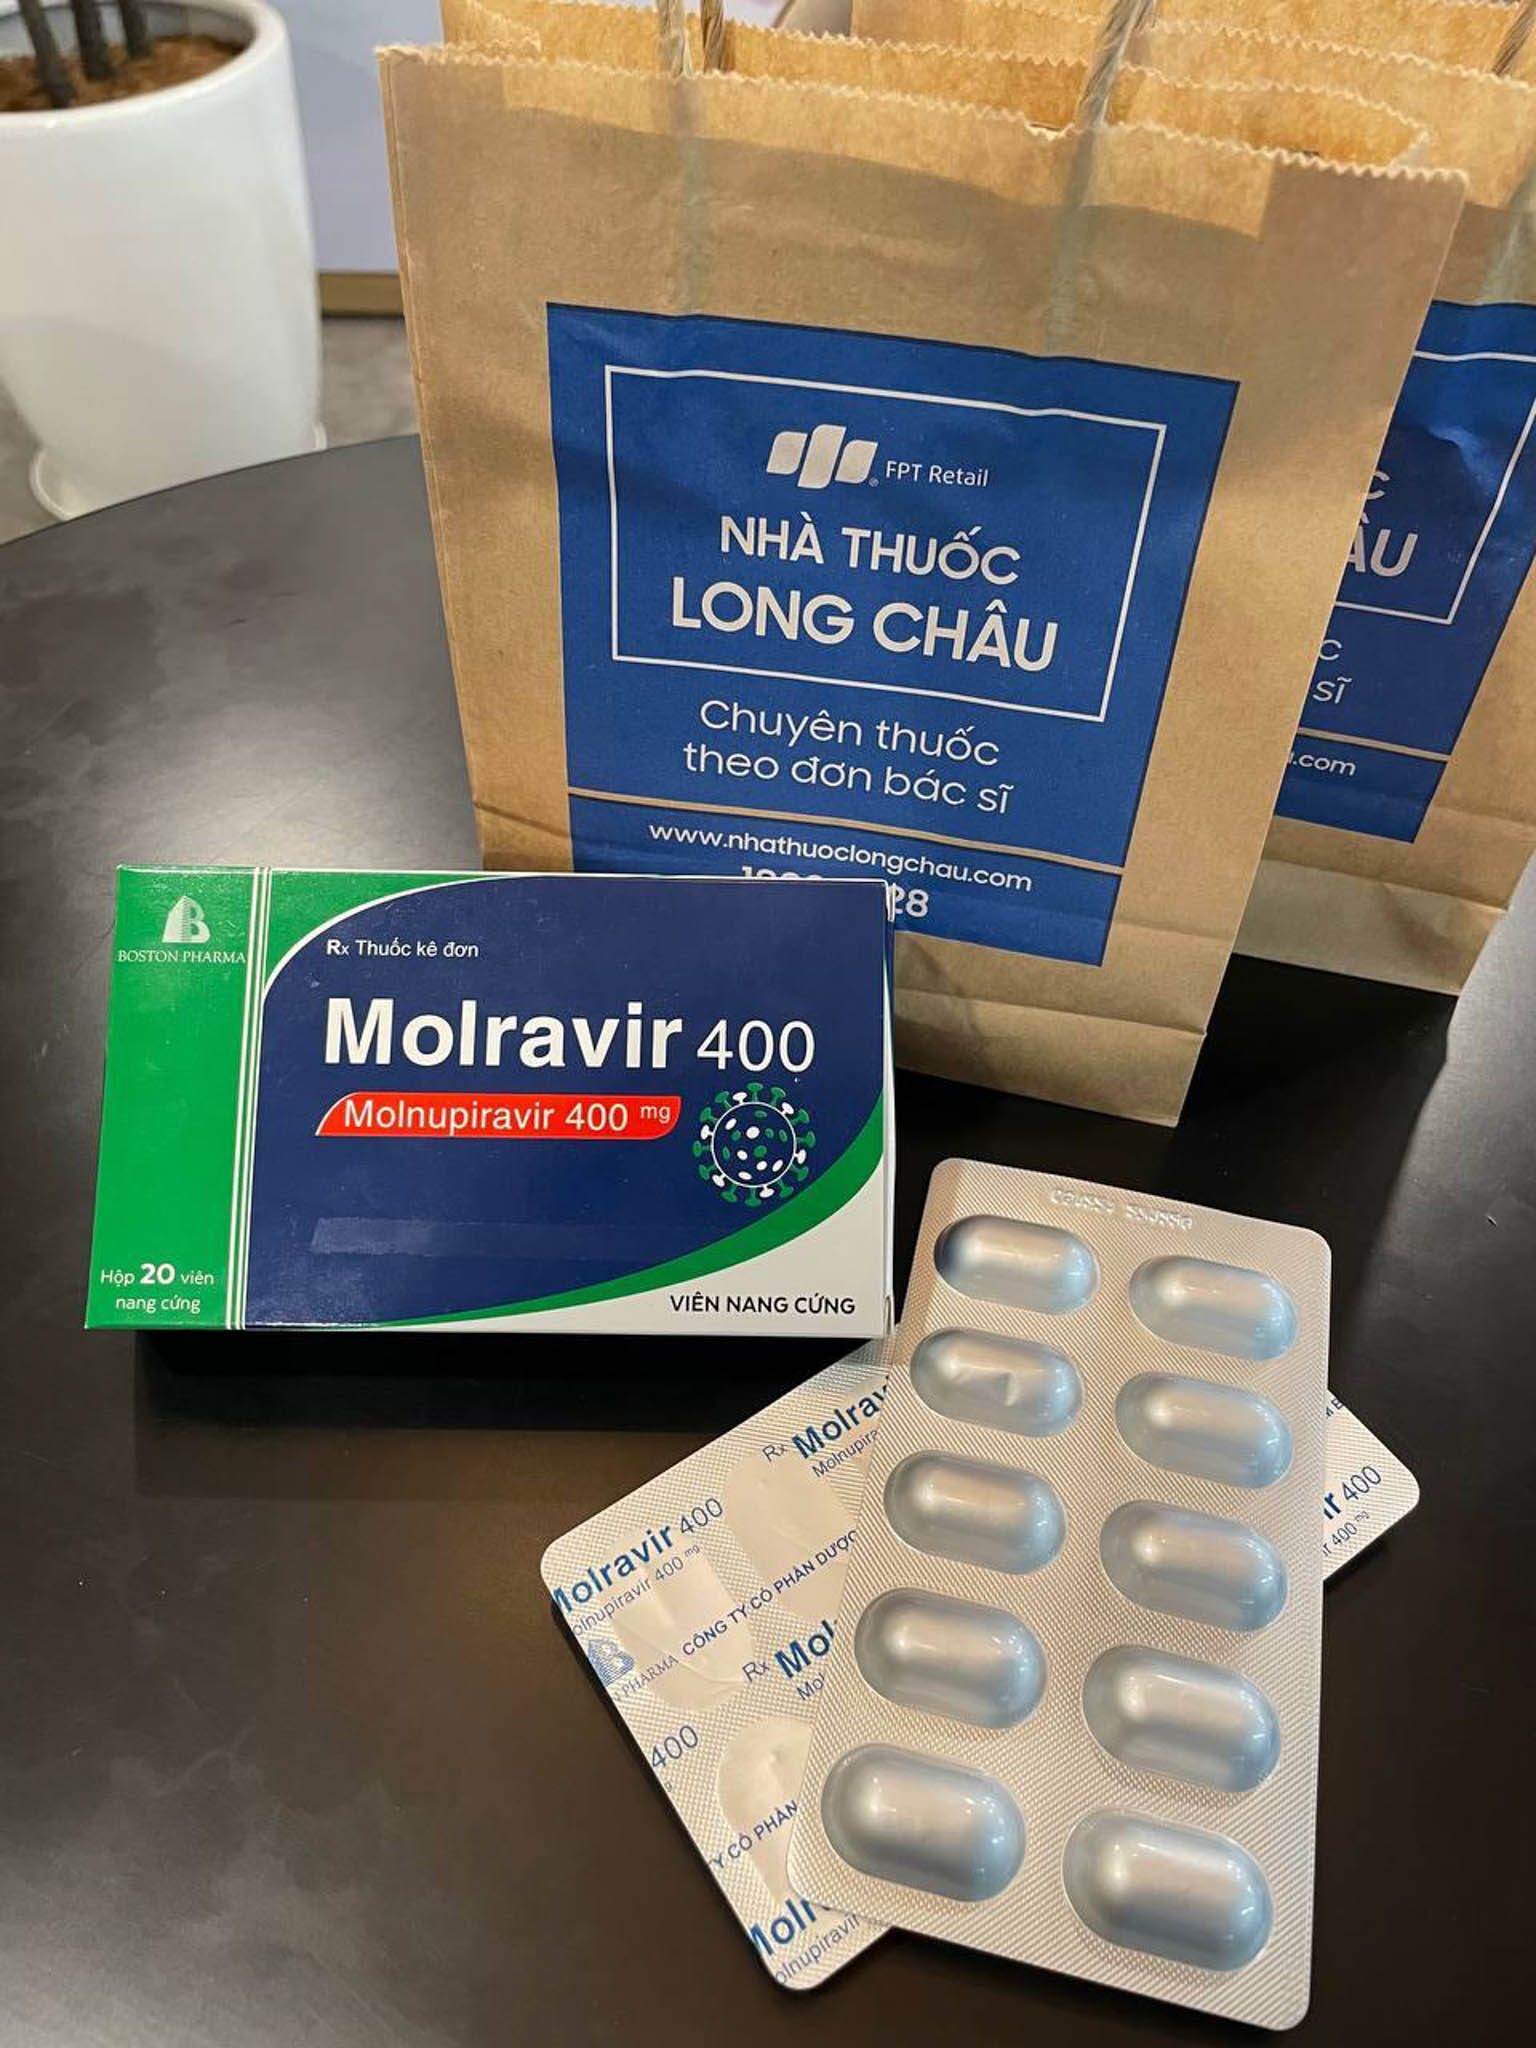 Thuốc điều trị covid Molnupiravir do Bộ y tế cấp phép lưu hành đã lên kệ tại chuỗi nhà thuốc FPT Long Châu với giá cực tốt